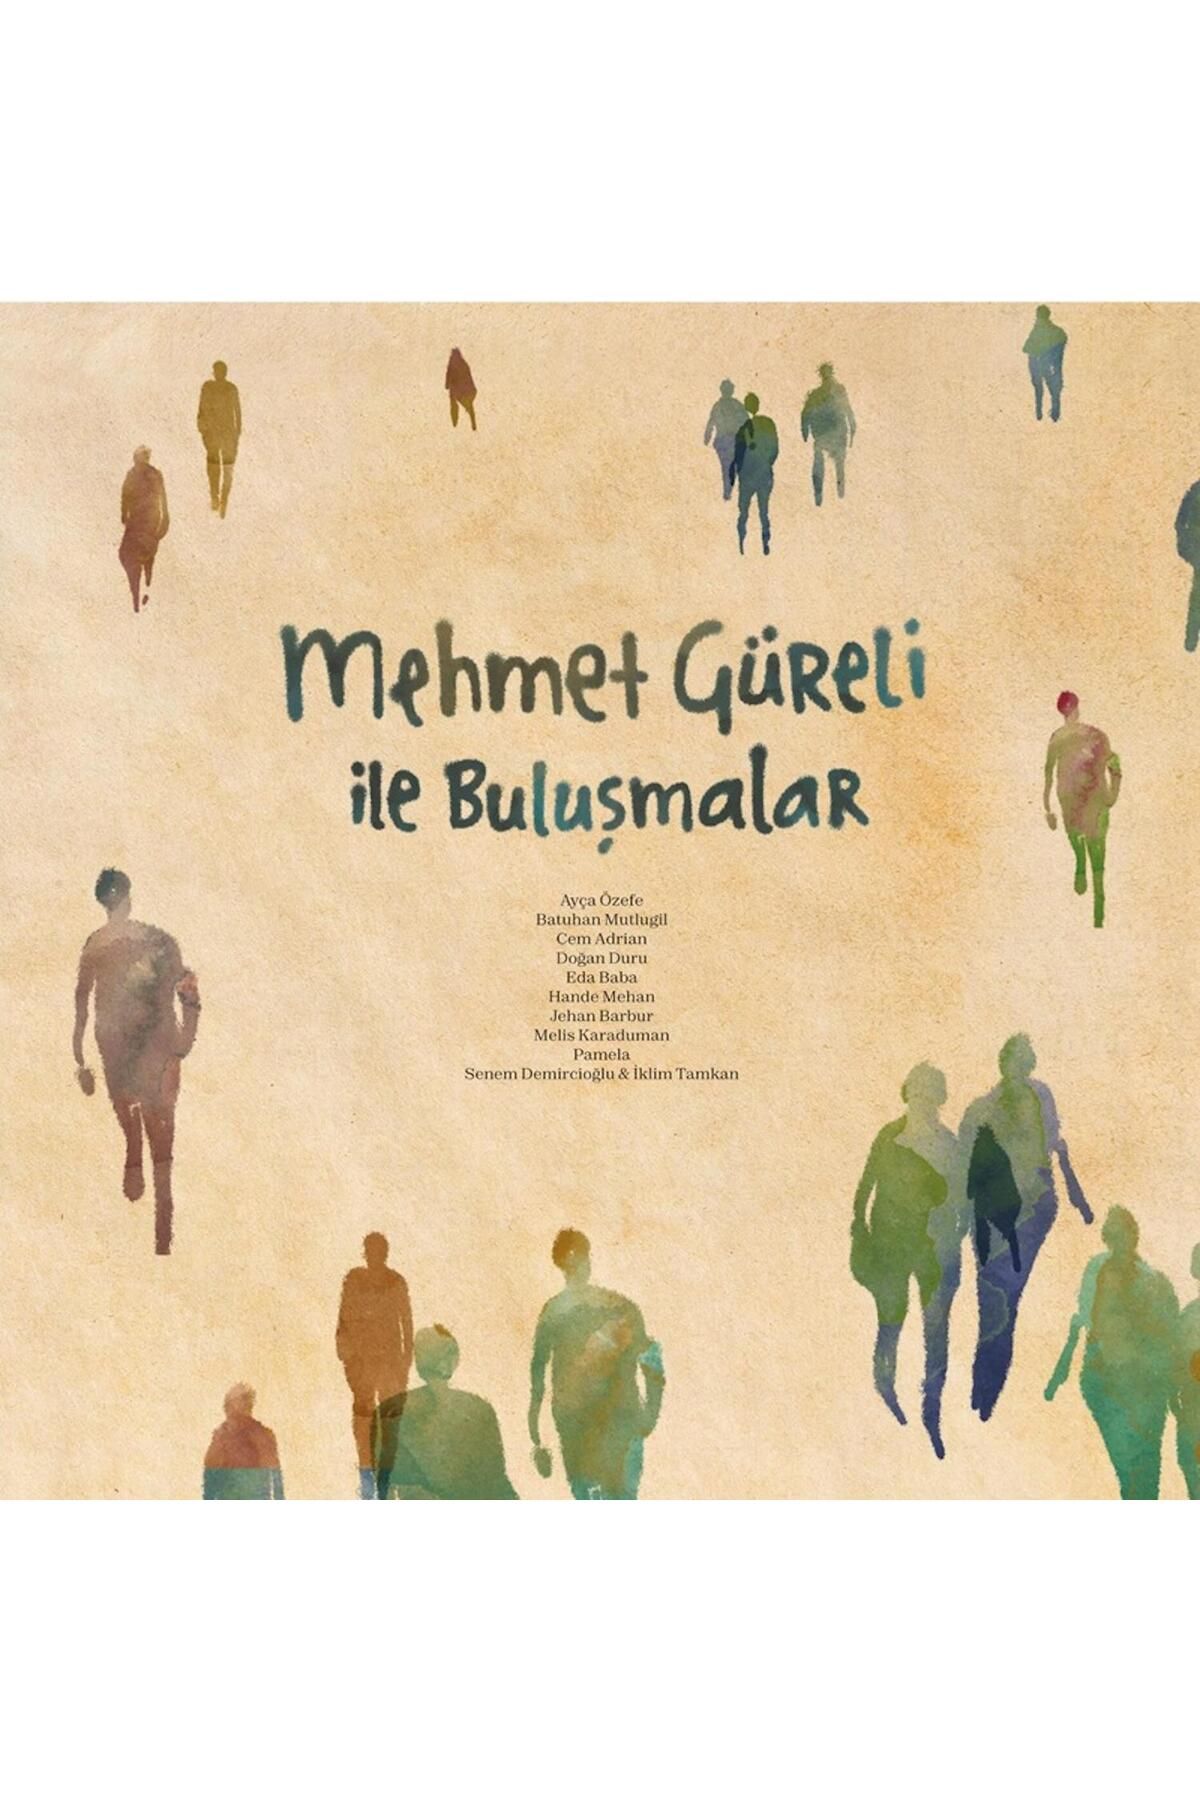 Sony Müzik Mehmet Güreli - Mehmet Güreli İle Buluşmalar (Plak)